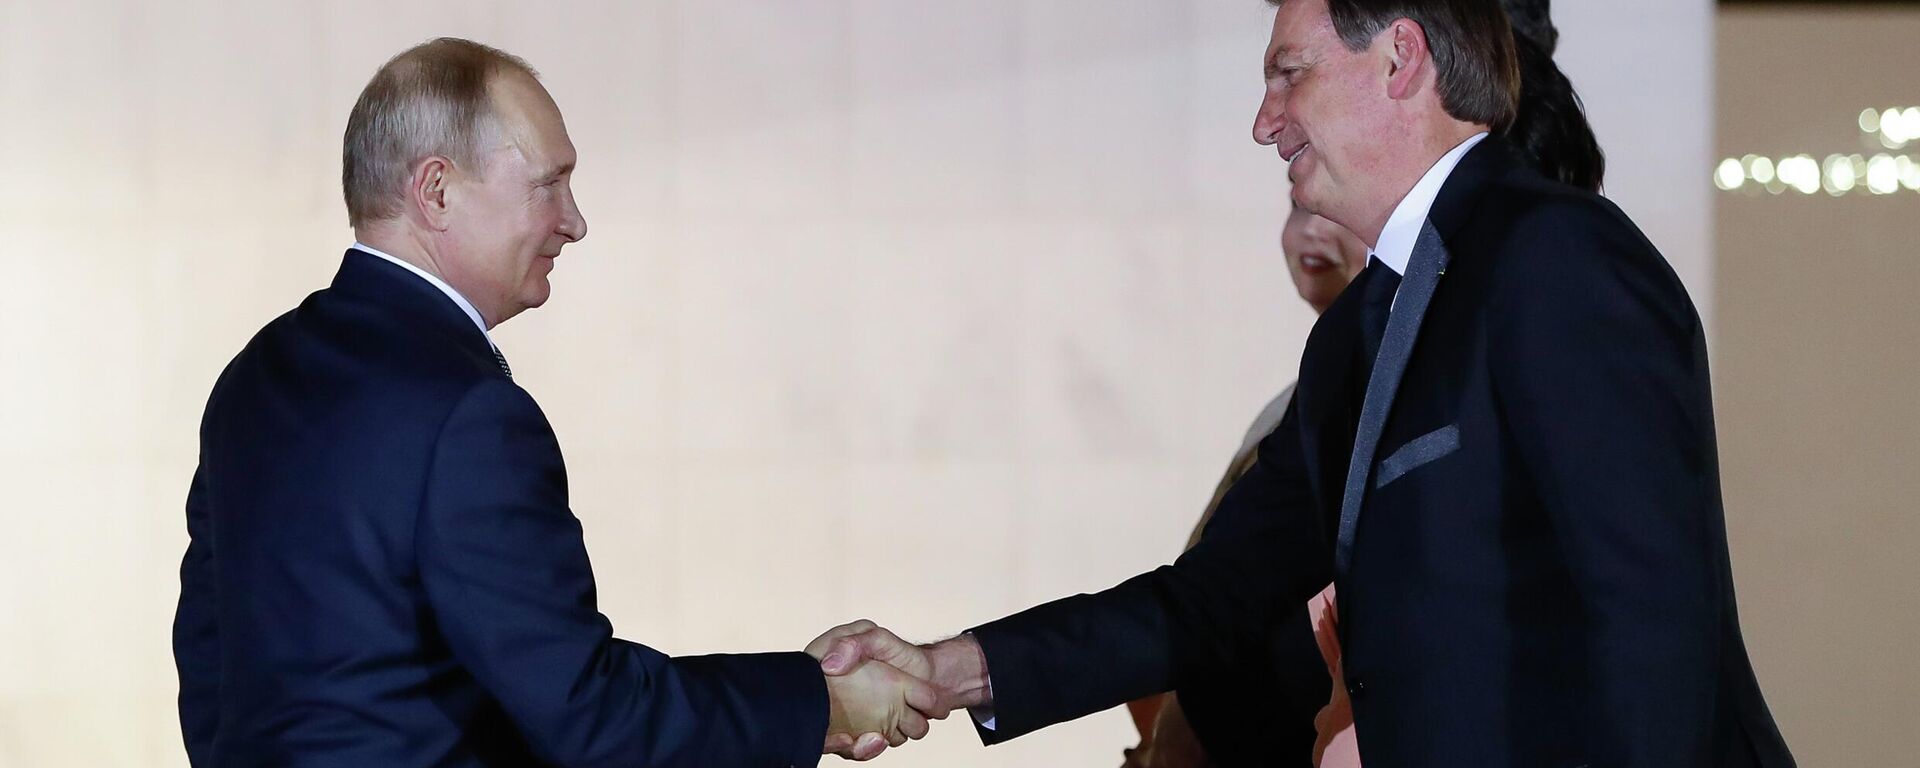 Presidente da República, Jair Bolsonaro acompanhado da Primeira Dama, Michelle Bolsonaro recebem o Presidente da Federação da Rússia, Vladimir Putin (foto de arquivo) - Sputnik Brasil, 1920, 30.05.2022